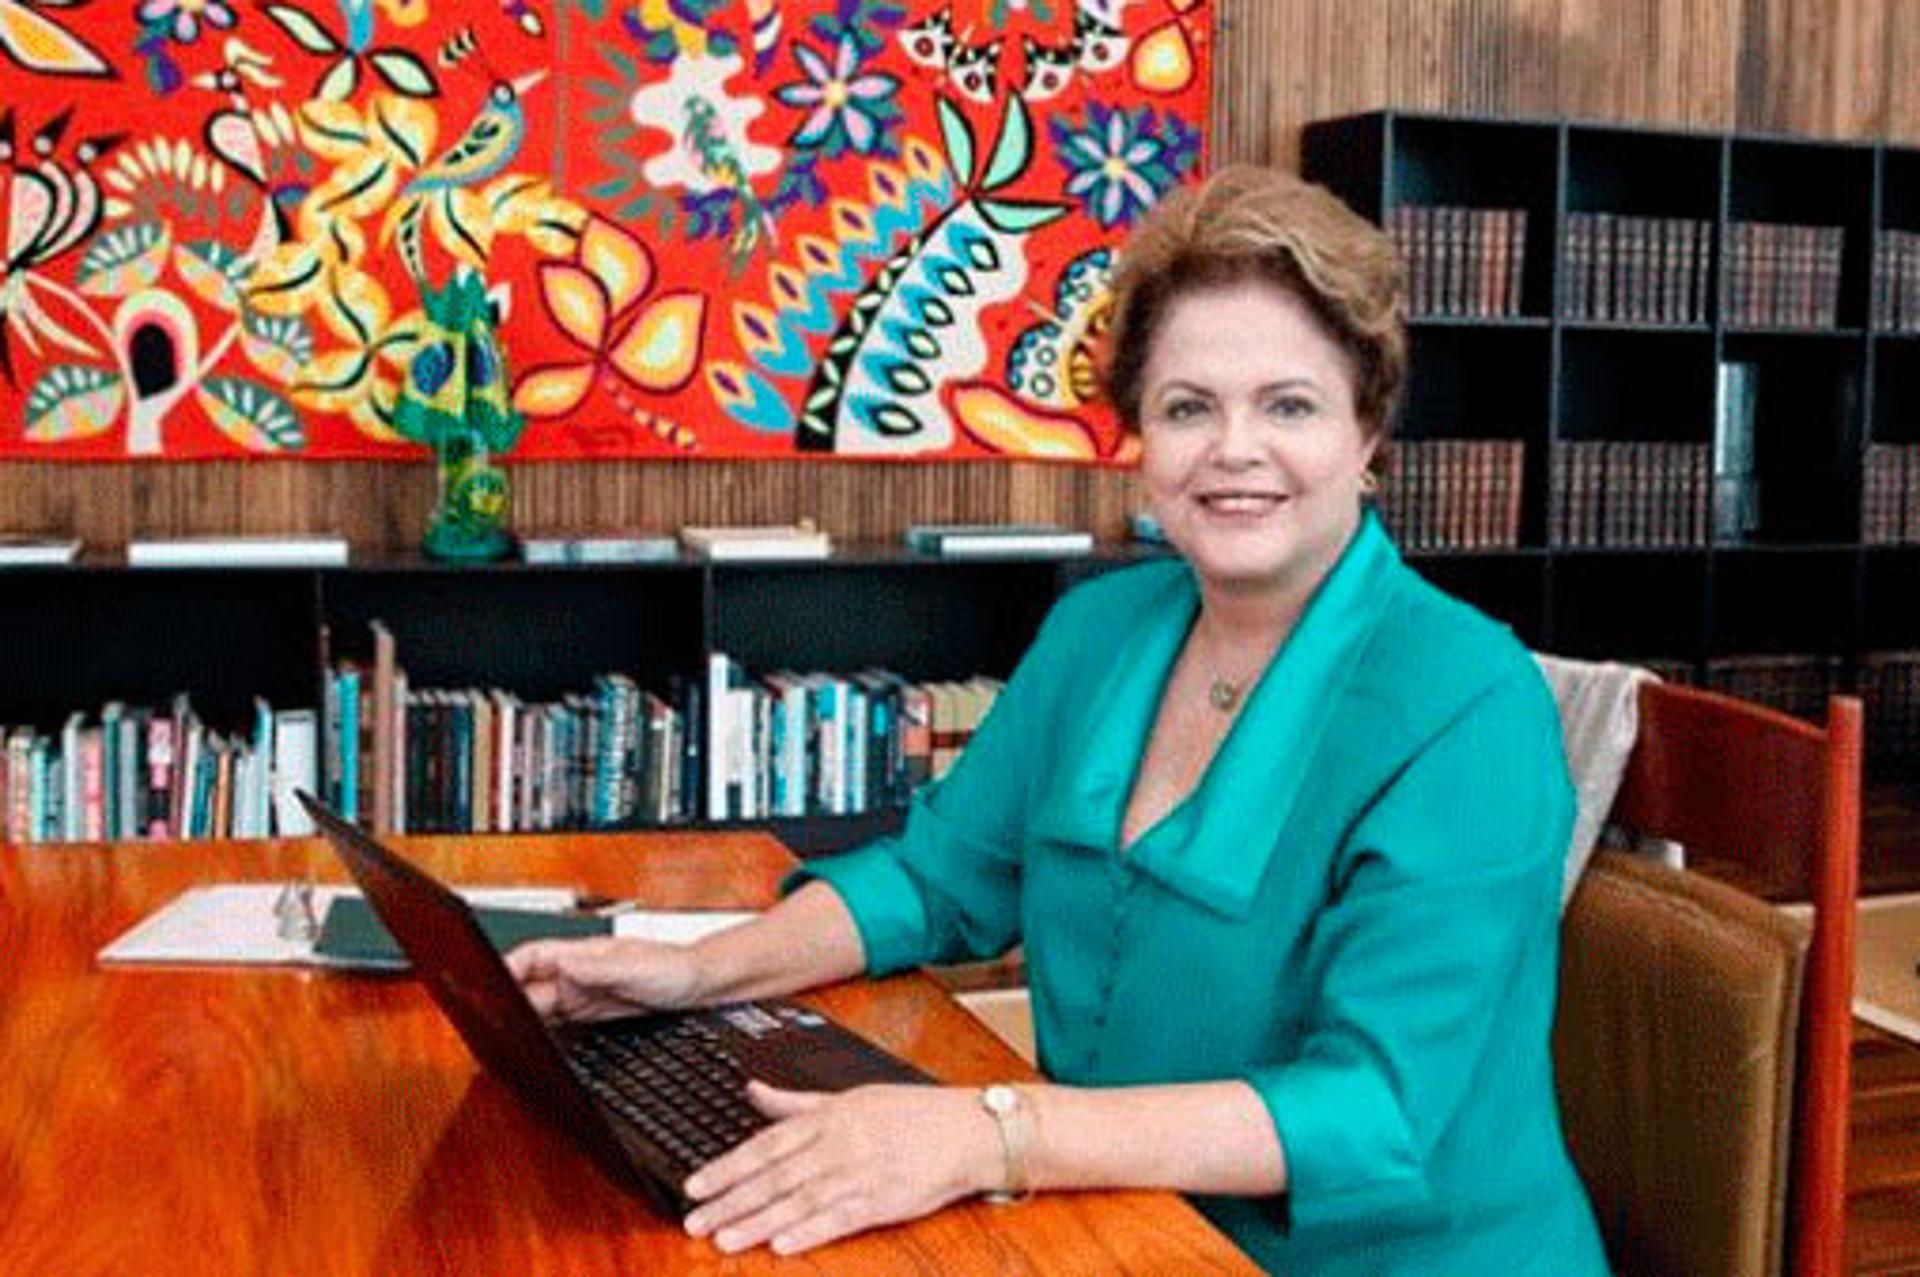 Dilma faz 'Tóis' em papo com internautas (Foto: Divulgação)